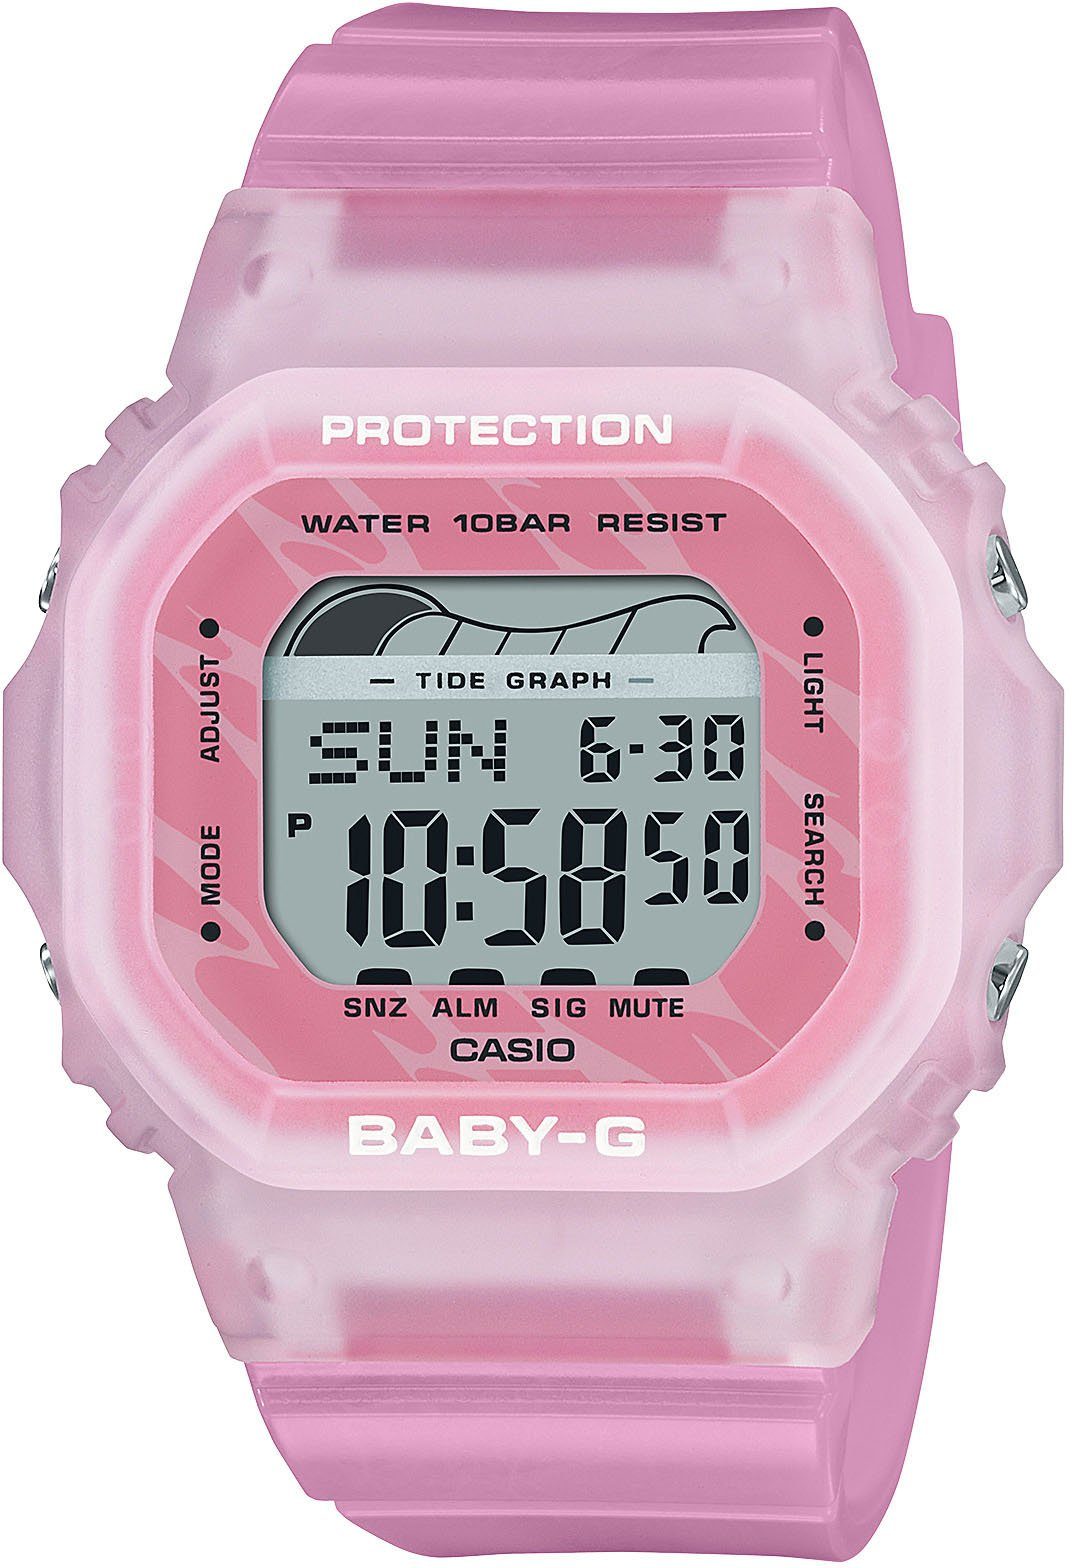 CASIO BABY-G Chronograph BLX-565S-4ER, Quarzuhr, Armbanduhr, Damenuhr, digital, Stoppfunktion, Weltzeit